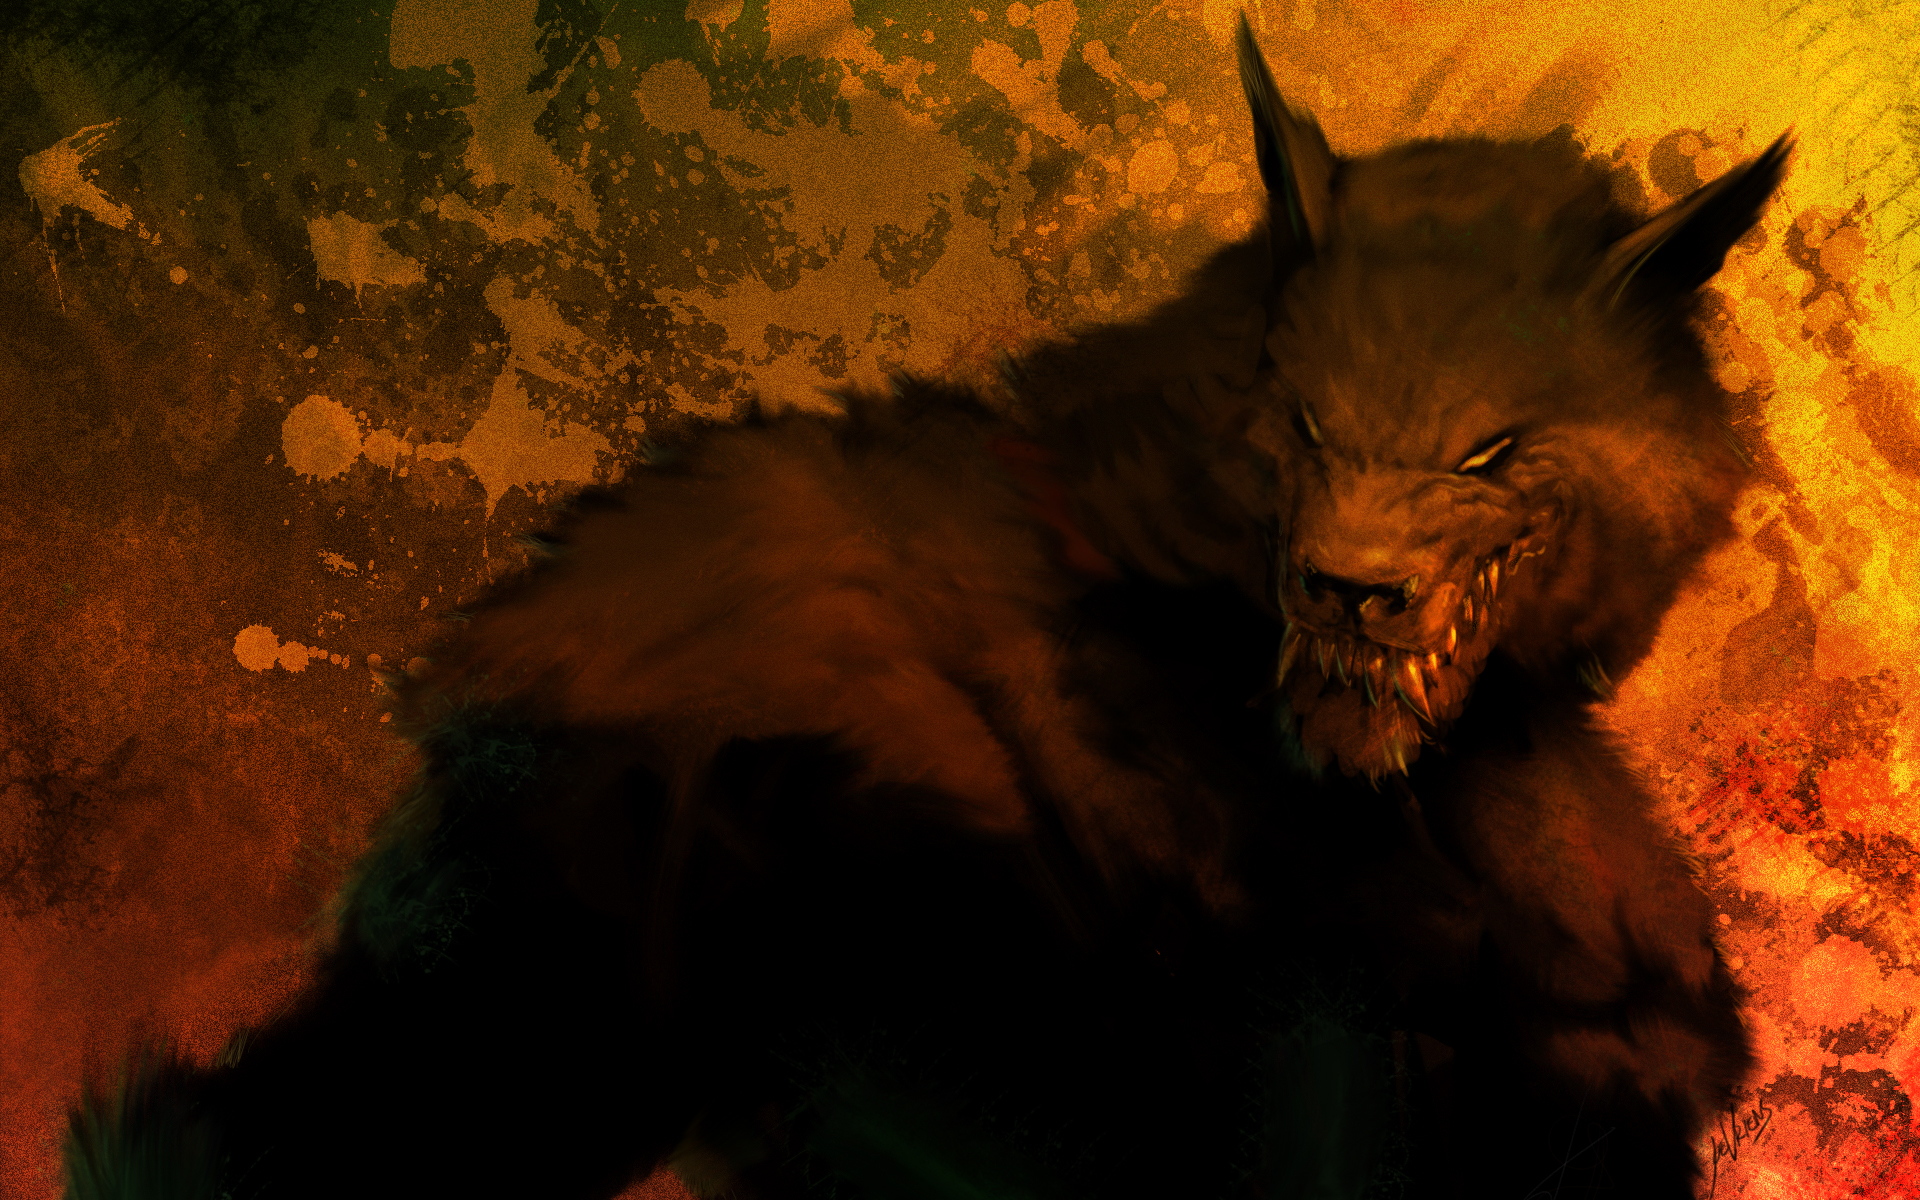 dark, fantasy, werewolf High Definition image